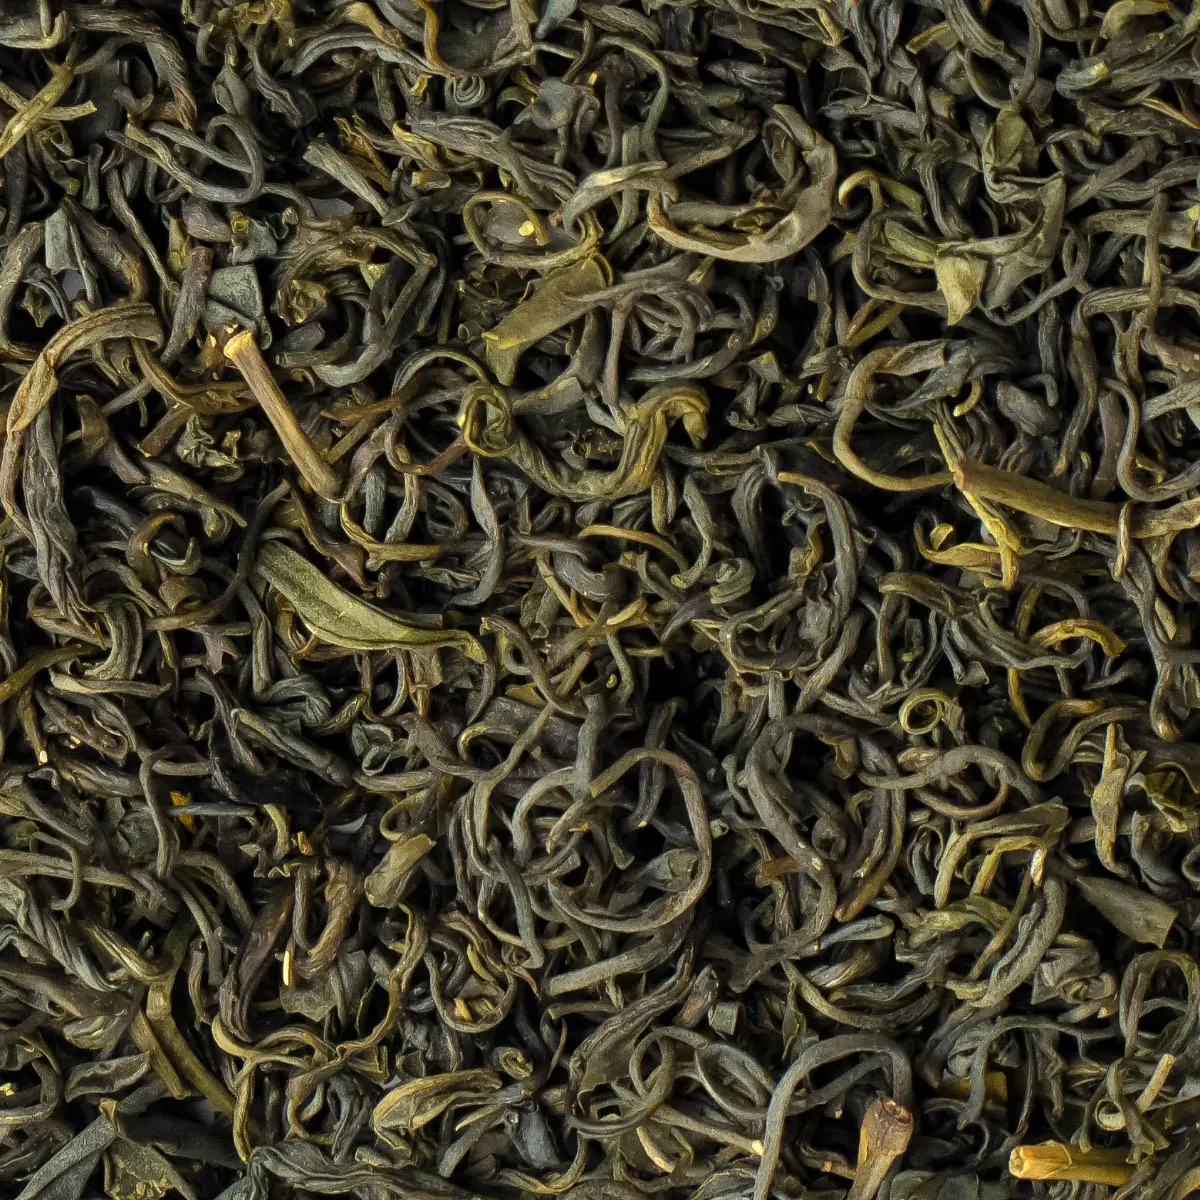 Зеленый чай Люй Сян Мин (Ароматные листочки)